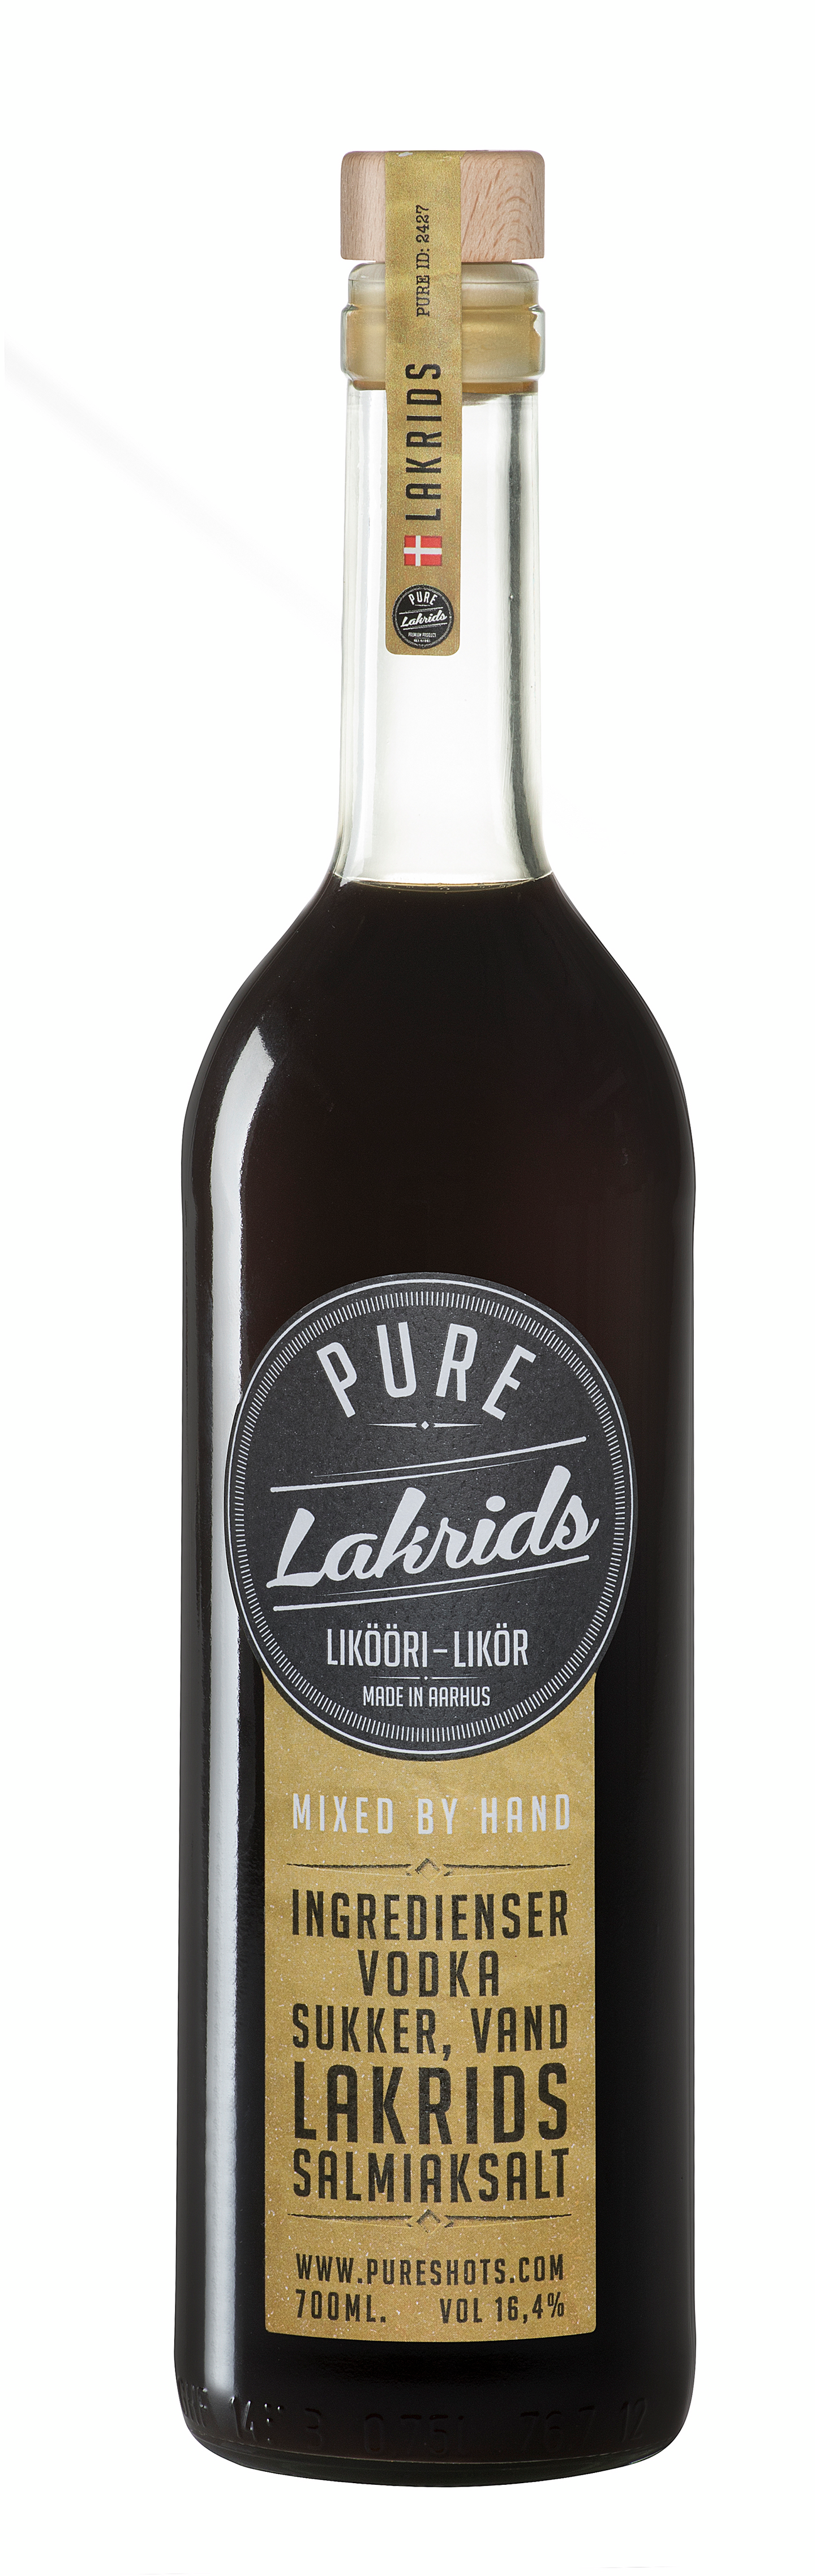 Pure Lakrids 70cl 16,4%